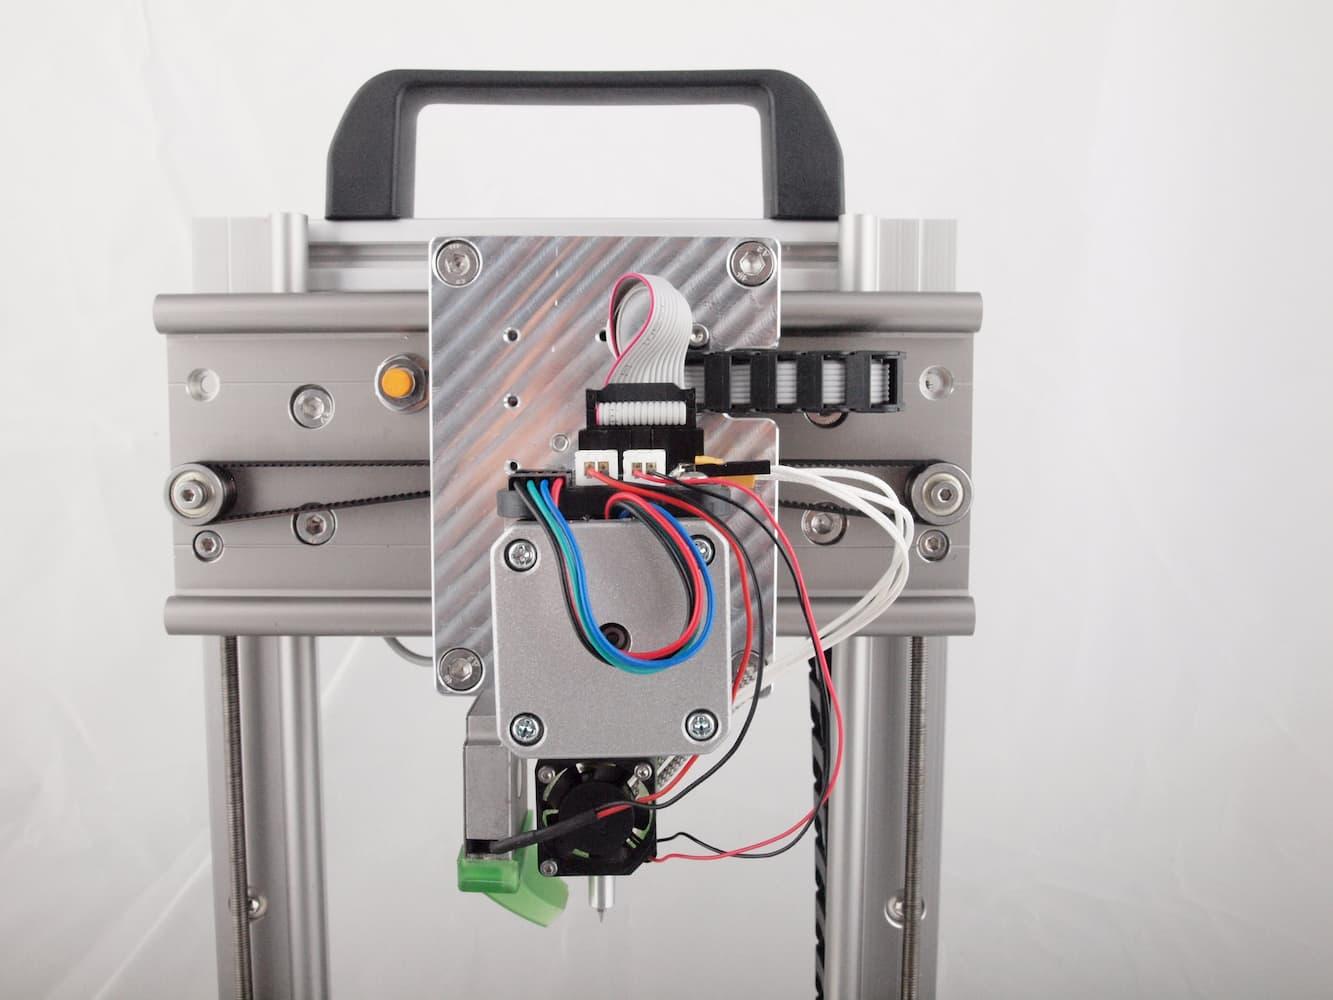 Ein kompakter, hochpräziser und leiser 3D-Drucker